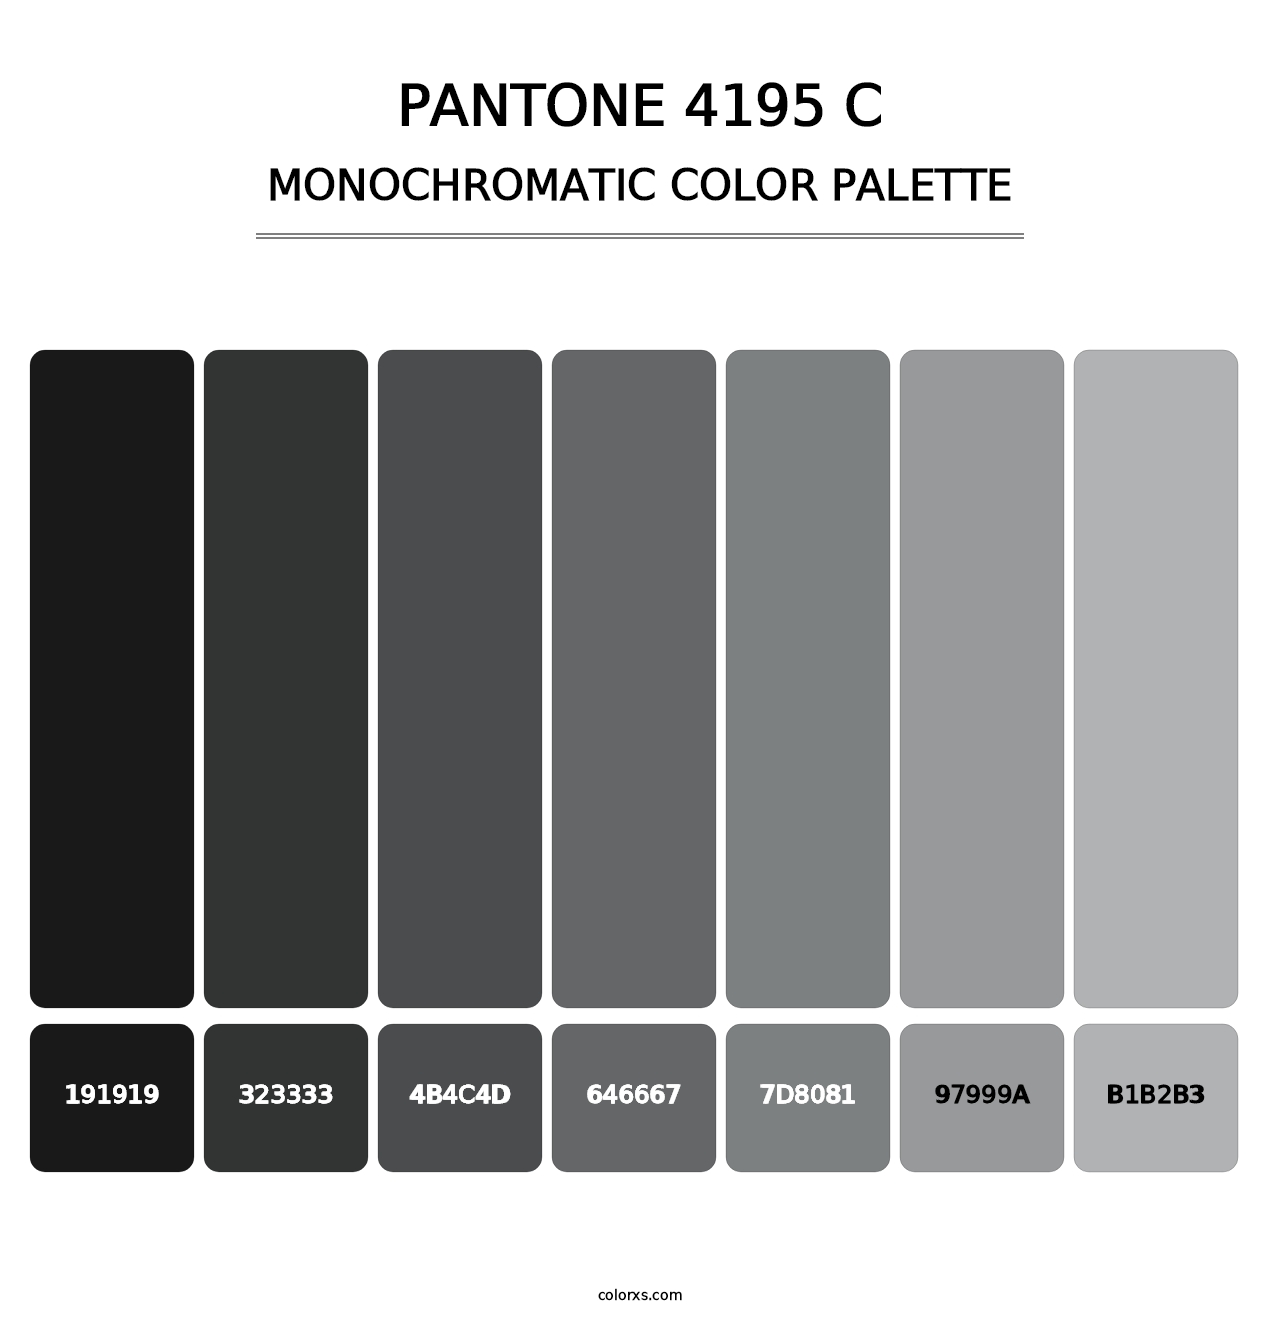 PANTONE 4195 C - Monochromatic Color Palette